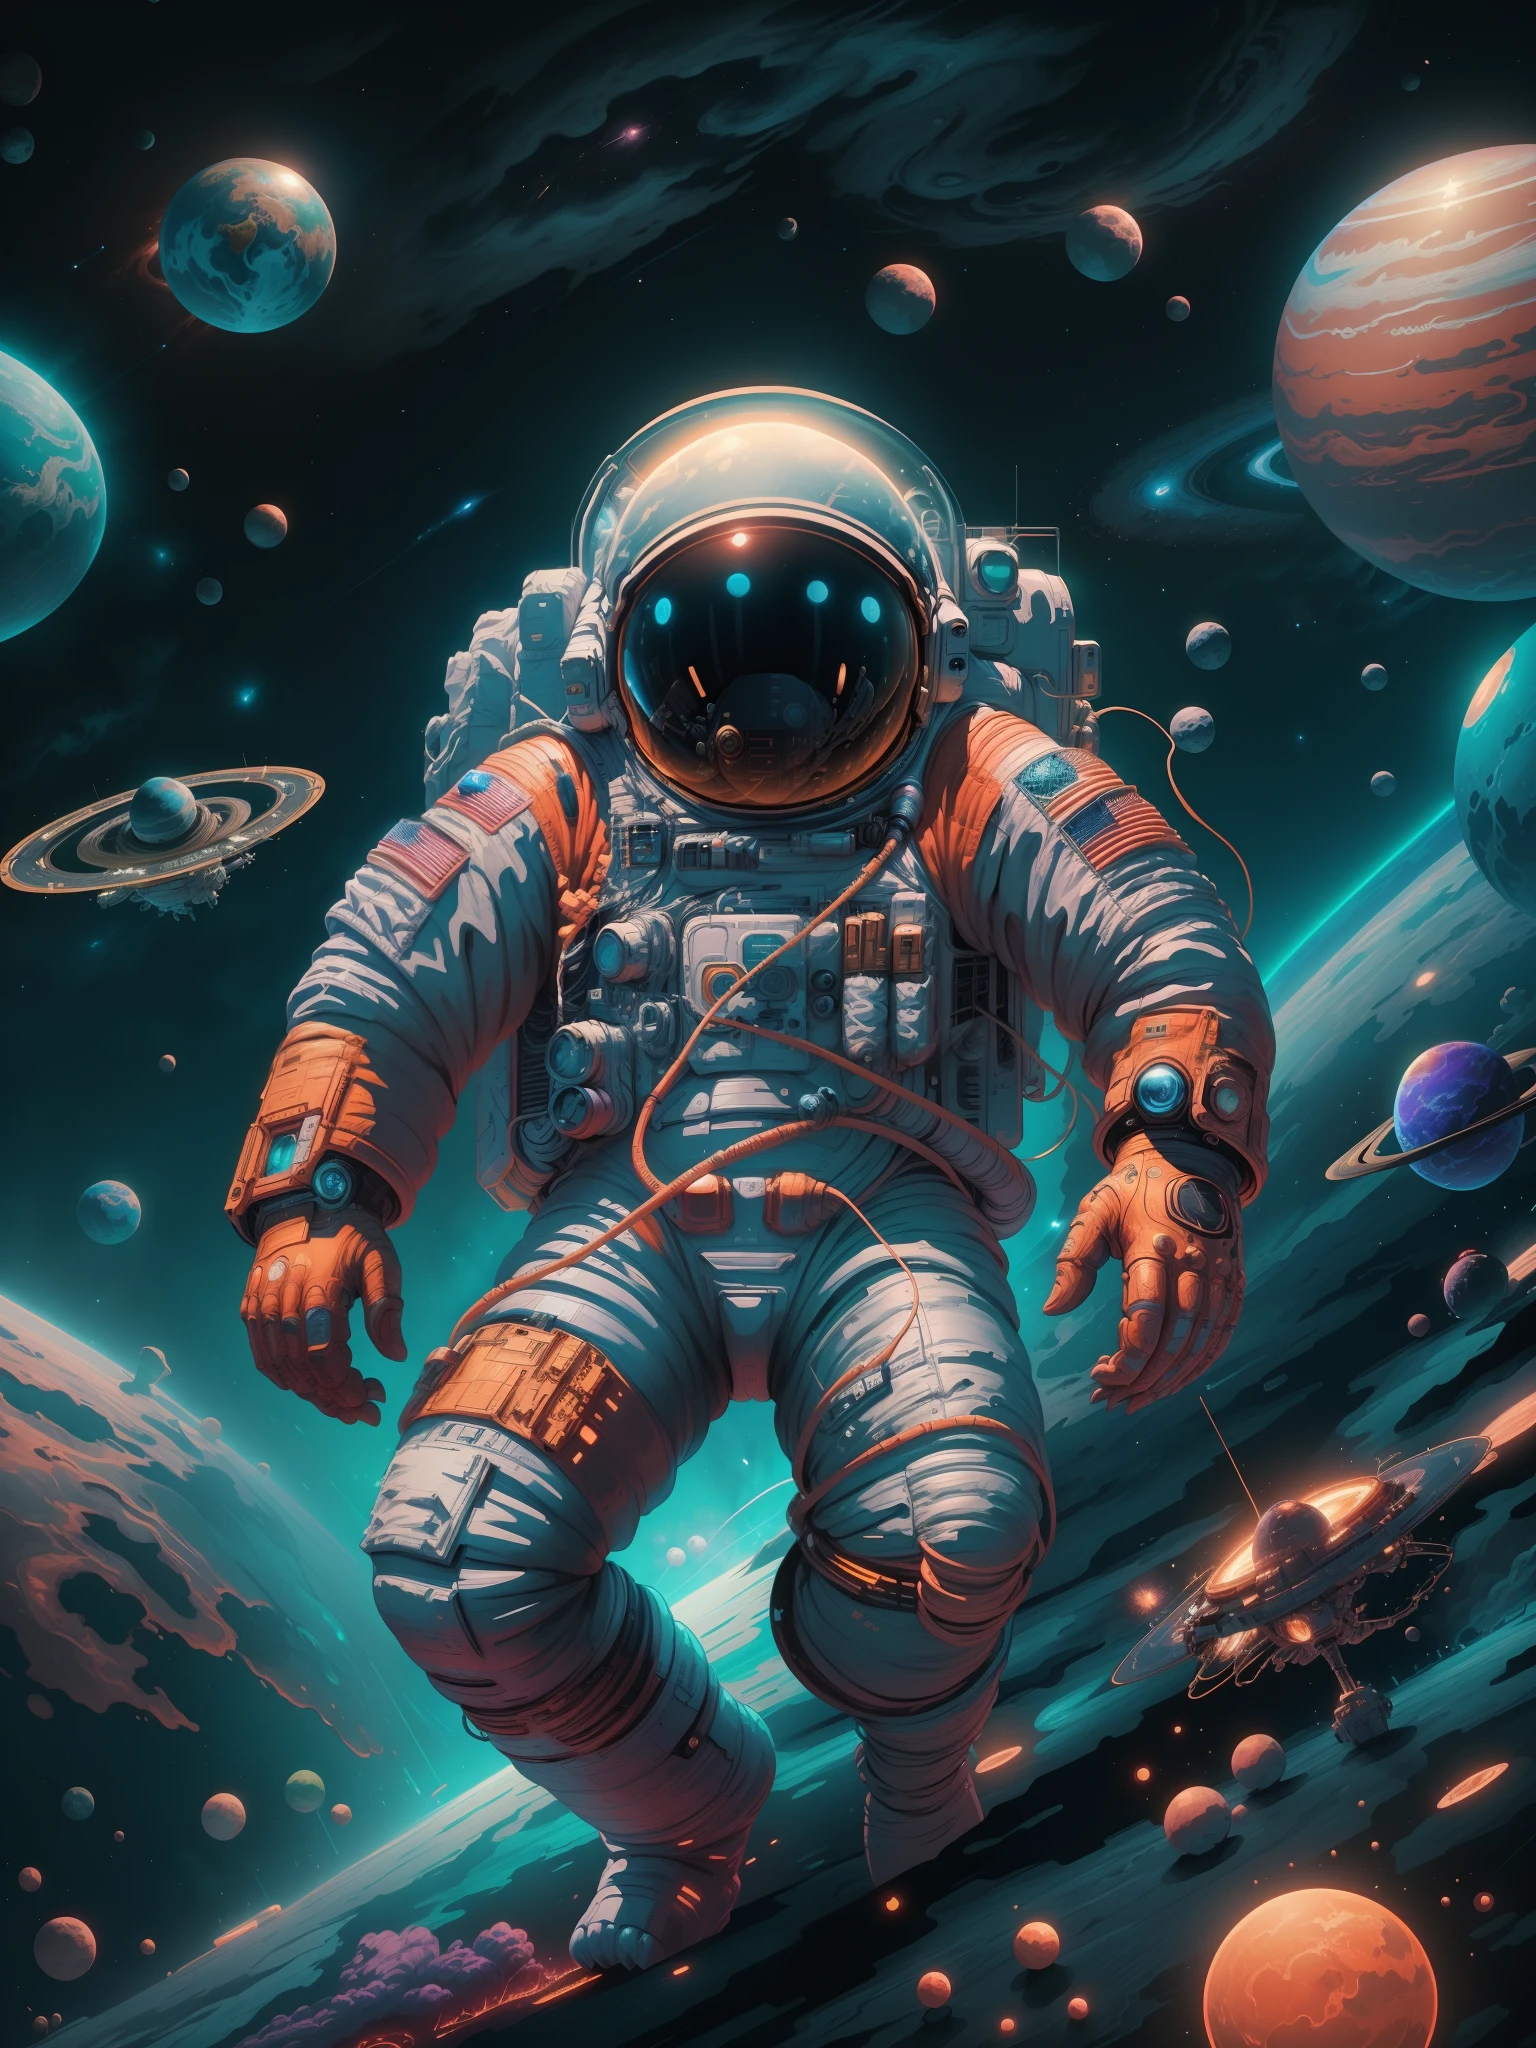 宇航员在太空中与行星和行星在背景中, 科幻数码艺术插画, 4k 高度详细的数字艺术, 只是个玩笑, 丹·芒福德 (Dan Mumford) 的艺术作品风格, 8k 令人惊叹的艺术作品, 科幻插图, 科幻插图, 4K 精细数字艺术, 令人惊叹的数码插图, 惊人的太空生物 4k, 和蒙福德. 8 k 辛烷值渲染